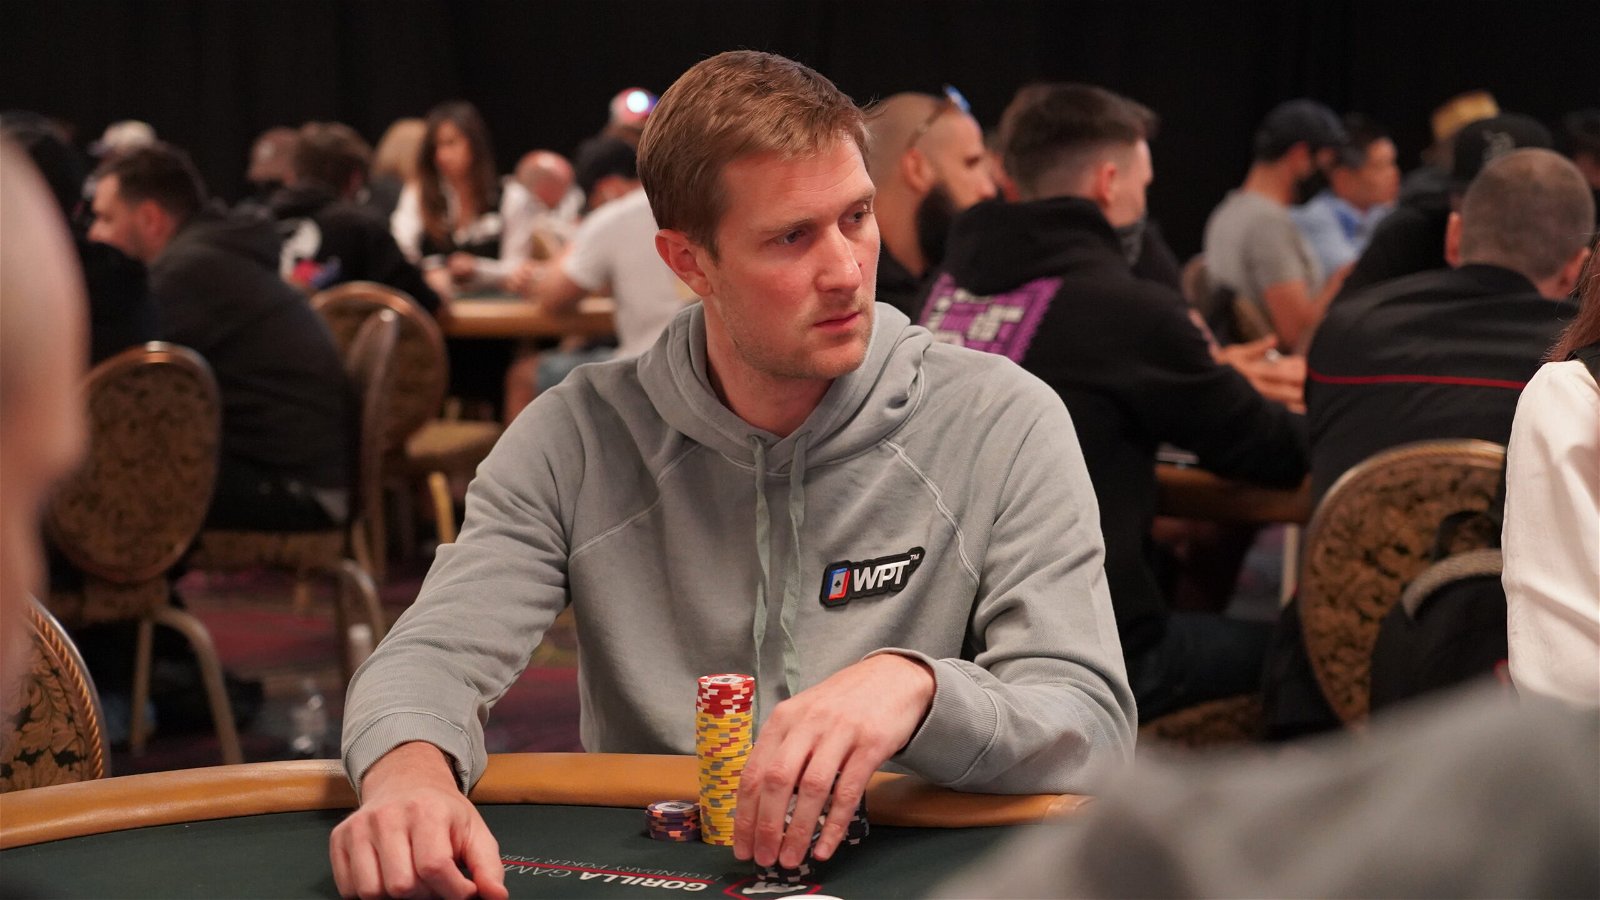 Popular poker vlogger Brad Owen playing in the 2022 World Series of Poker at Paris Las Vegas.